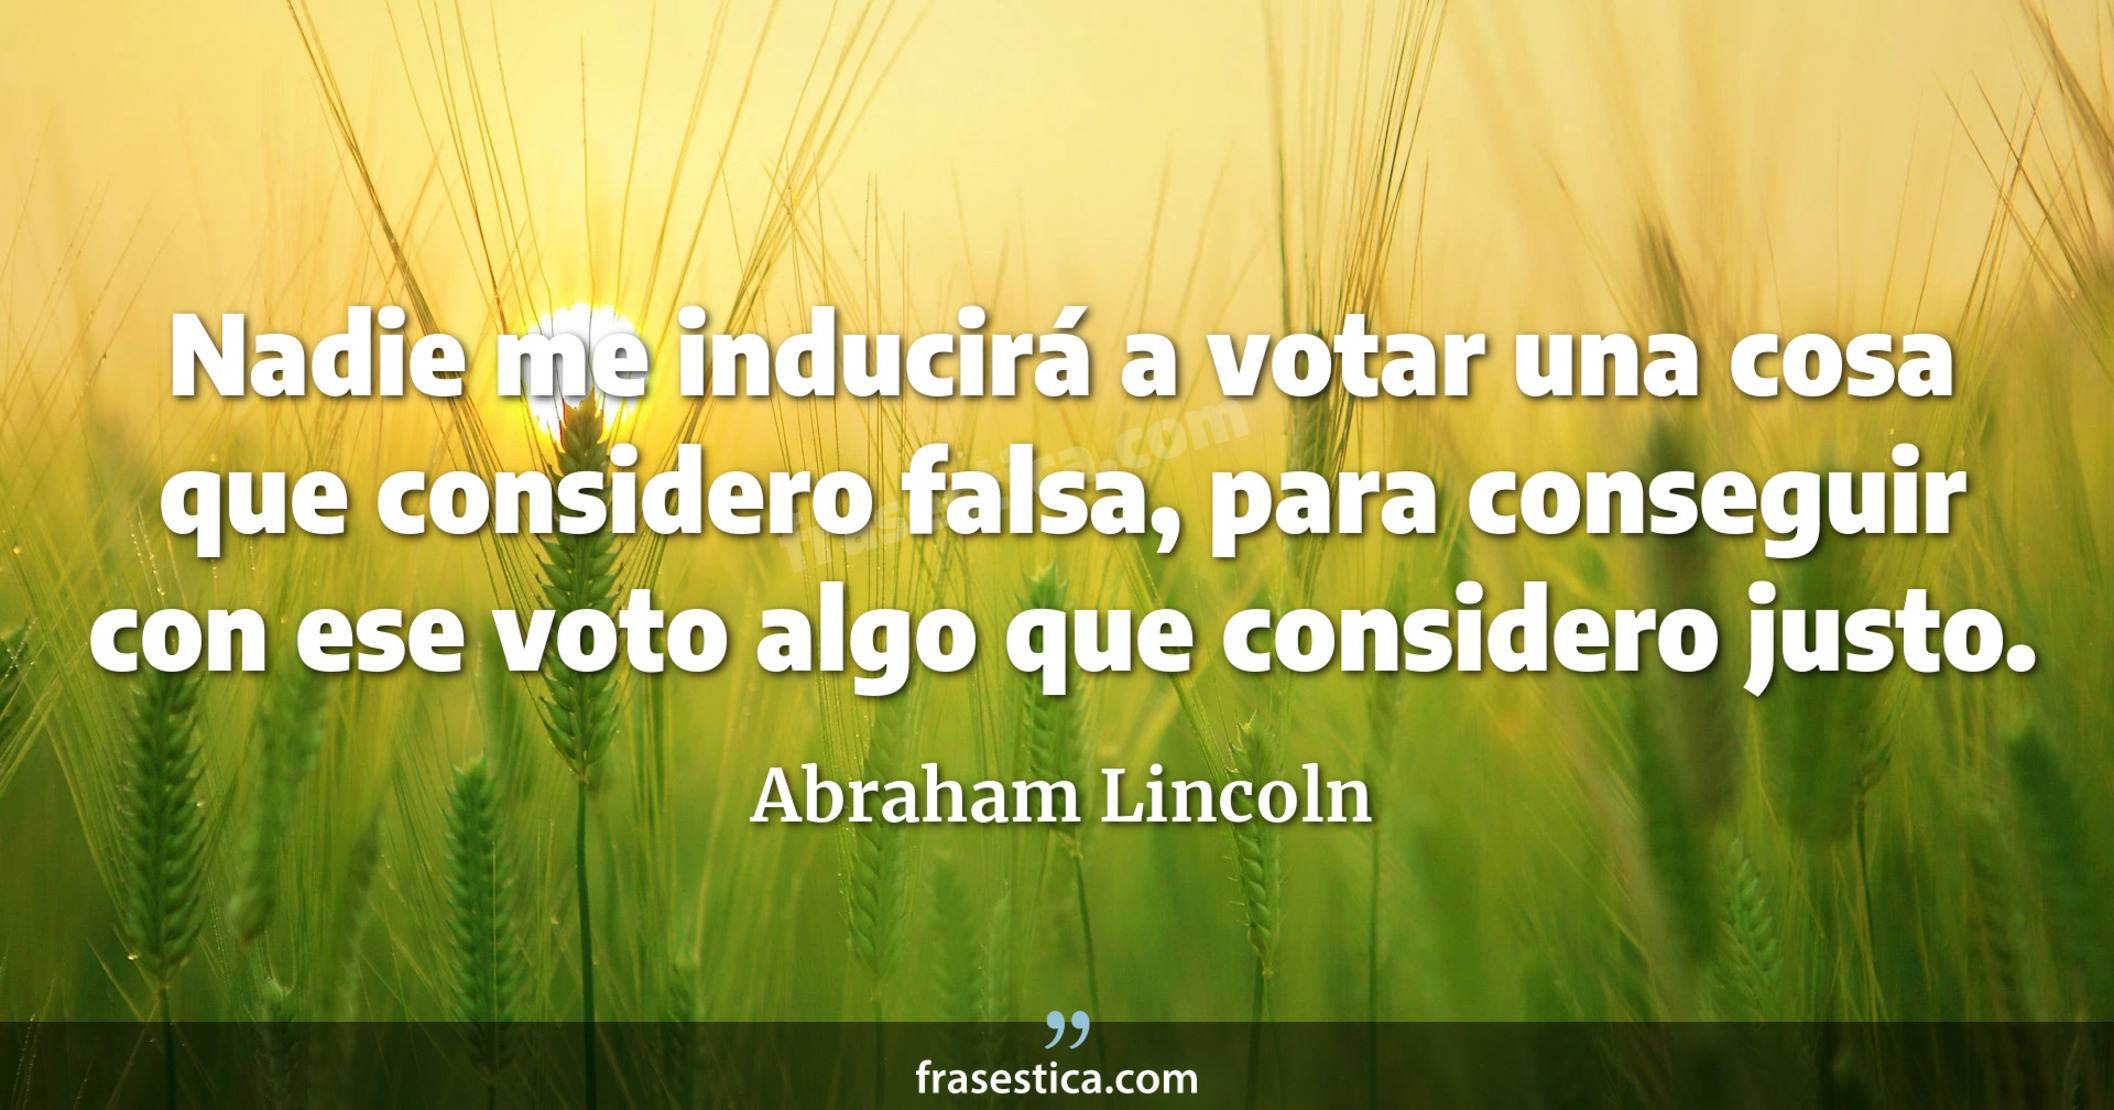 Nadie me inducirá a votar una cosa que considero falsa, para conseguir con ese voto algo que considero justo. - Abraham Lincoln